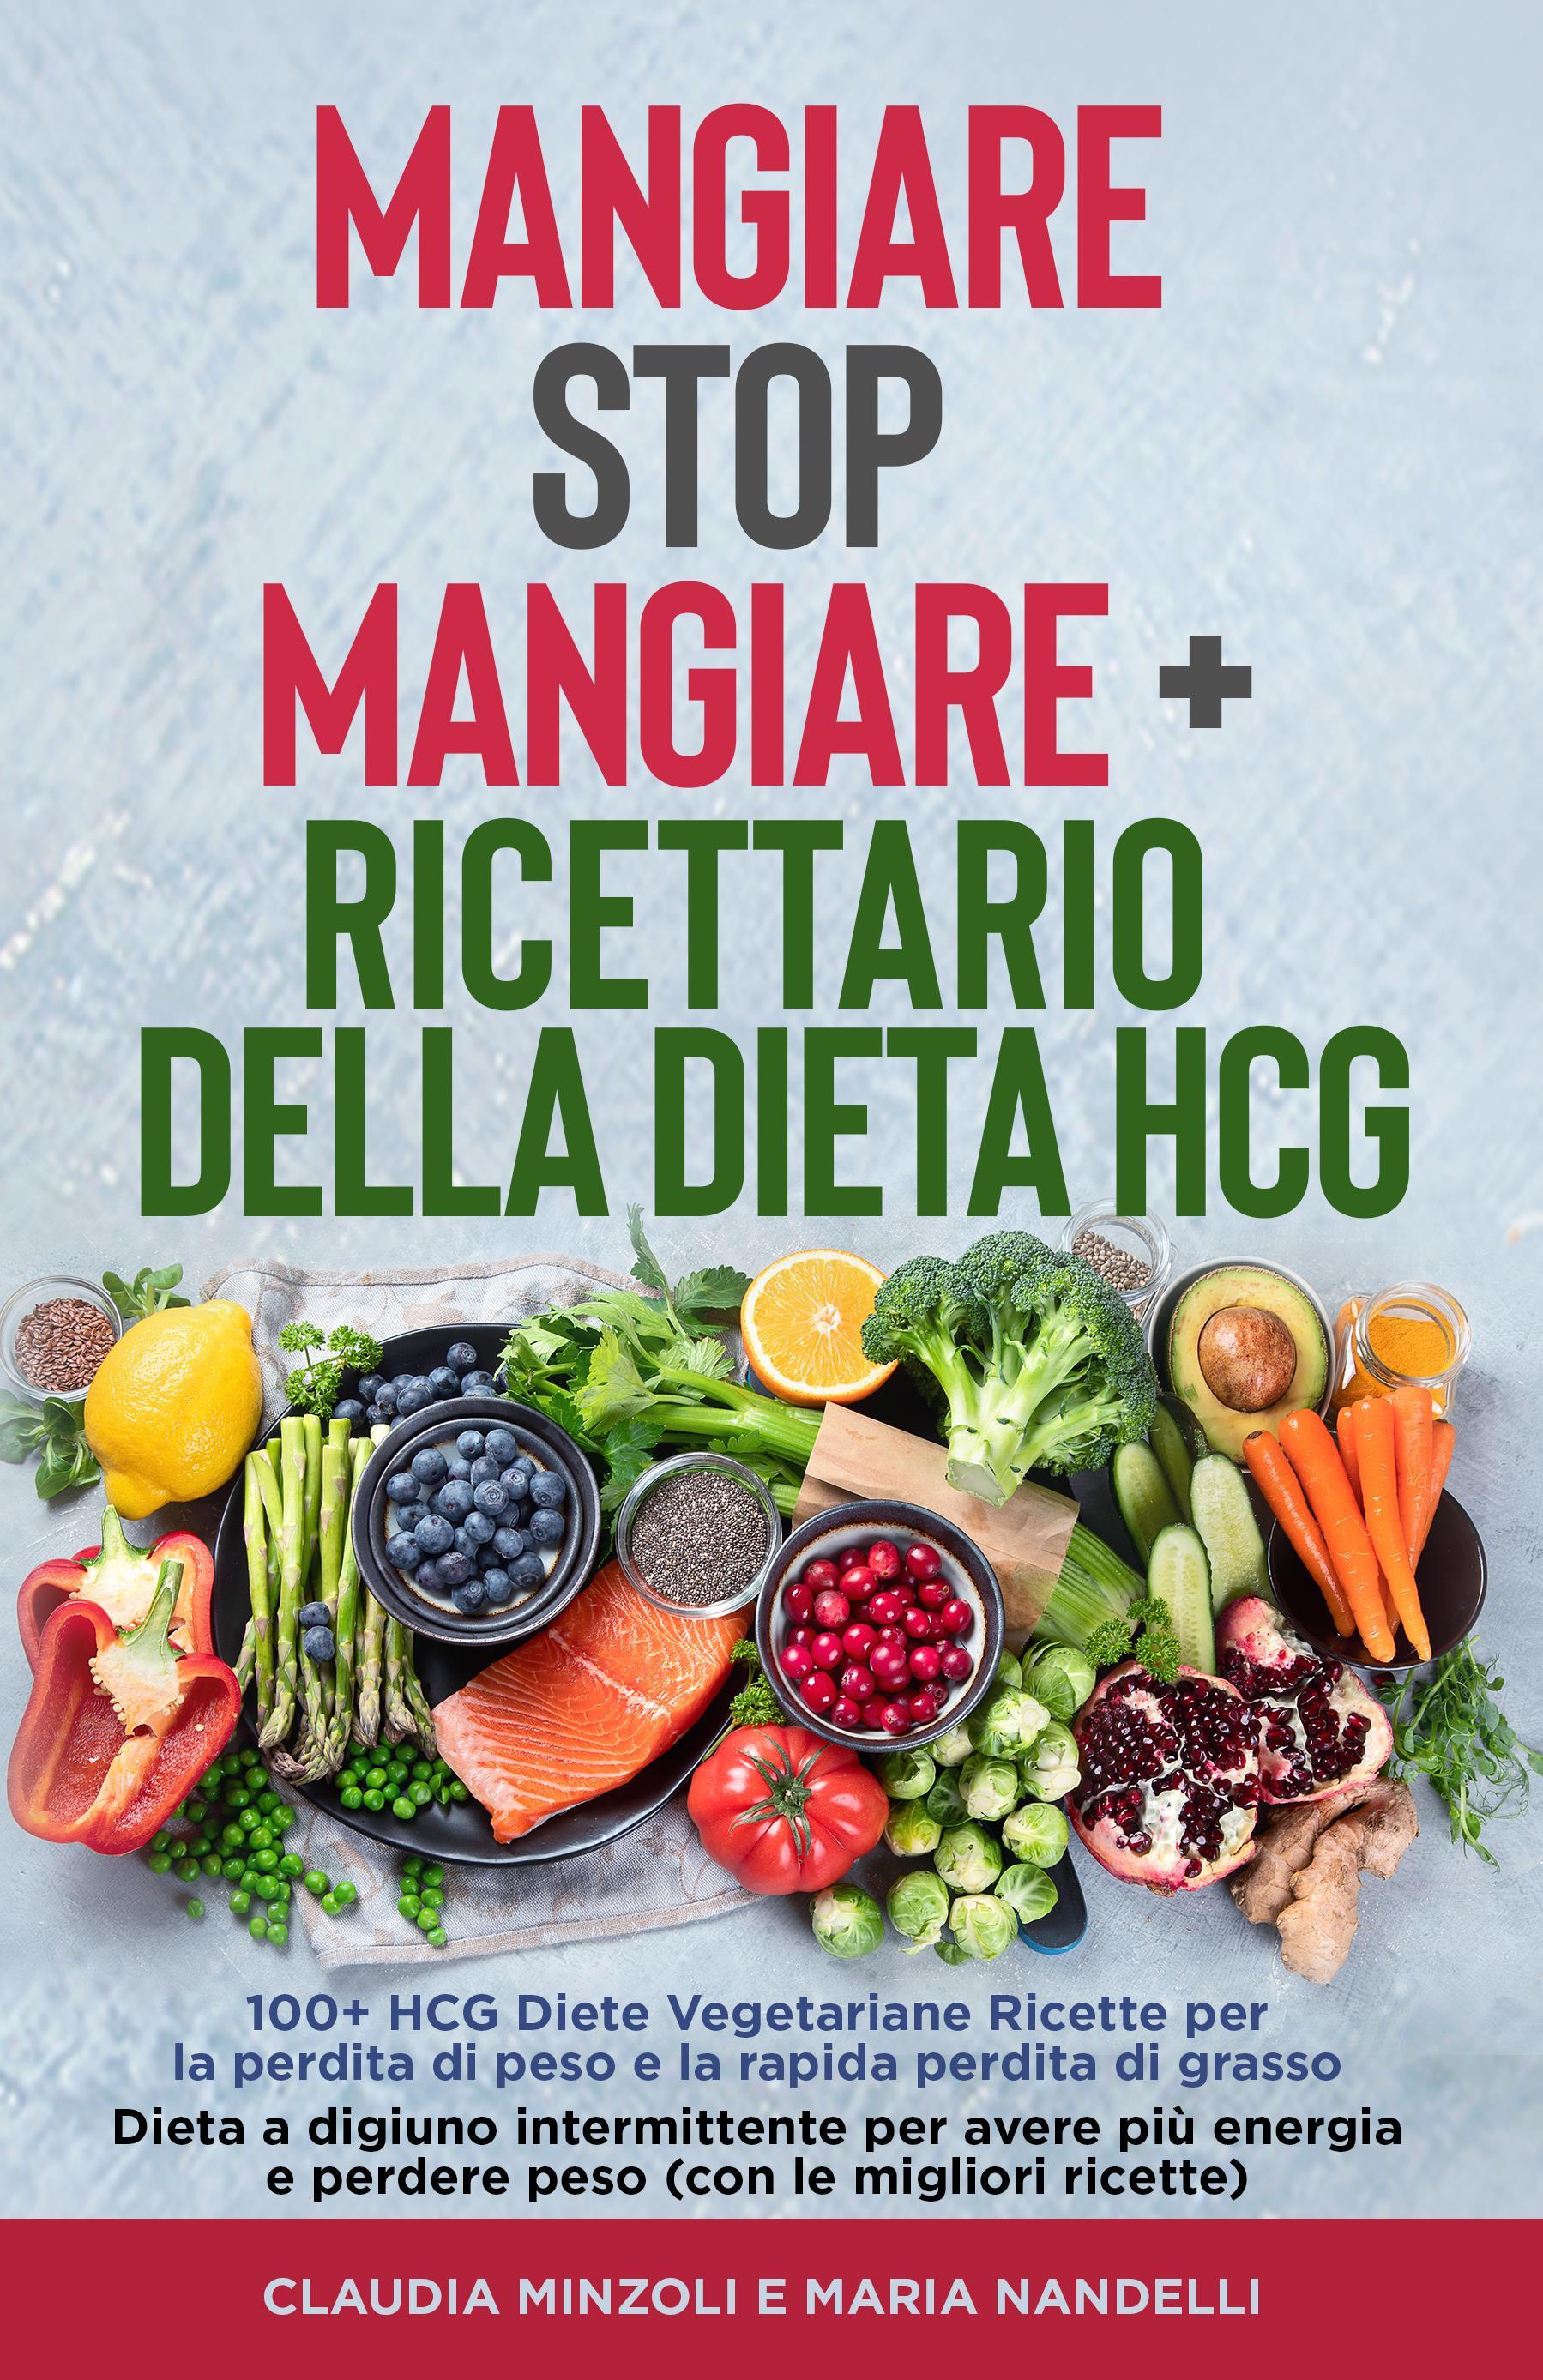 Mangiare Stop Mangiare + Ricettario della dieta HCG   100+ HCG Diete Vegetariane Ricette per la perdita di peso e la rapida perdita di grasso